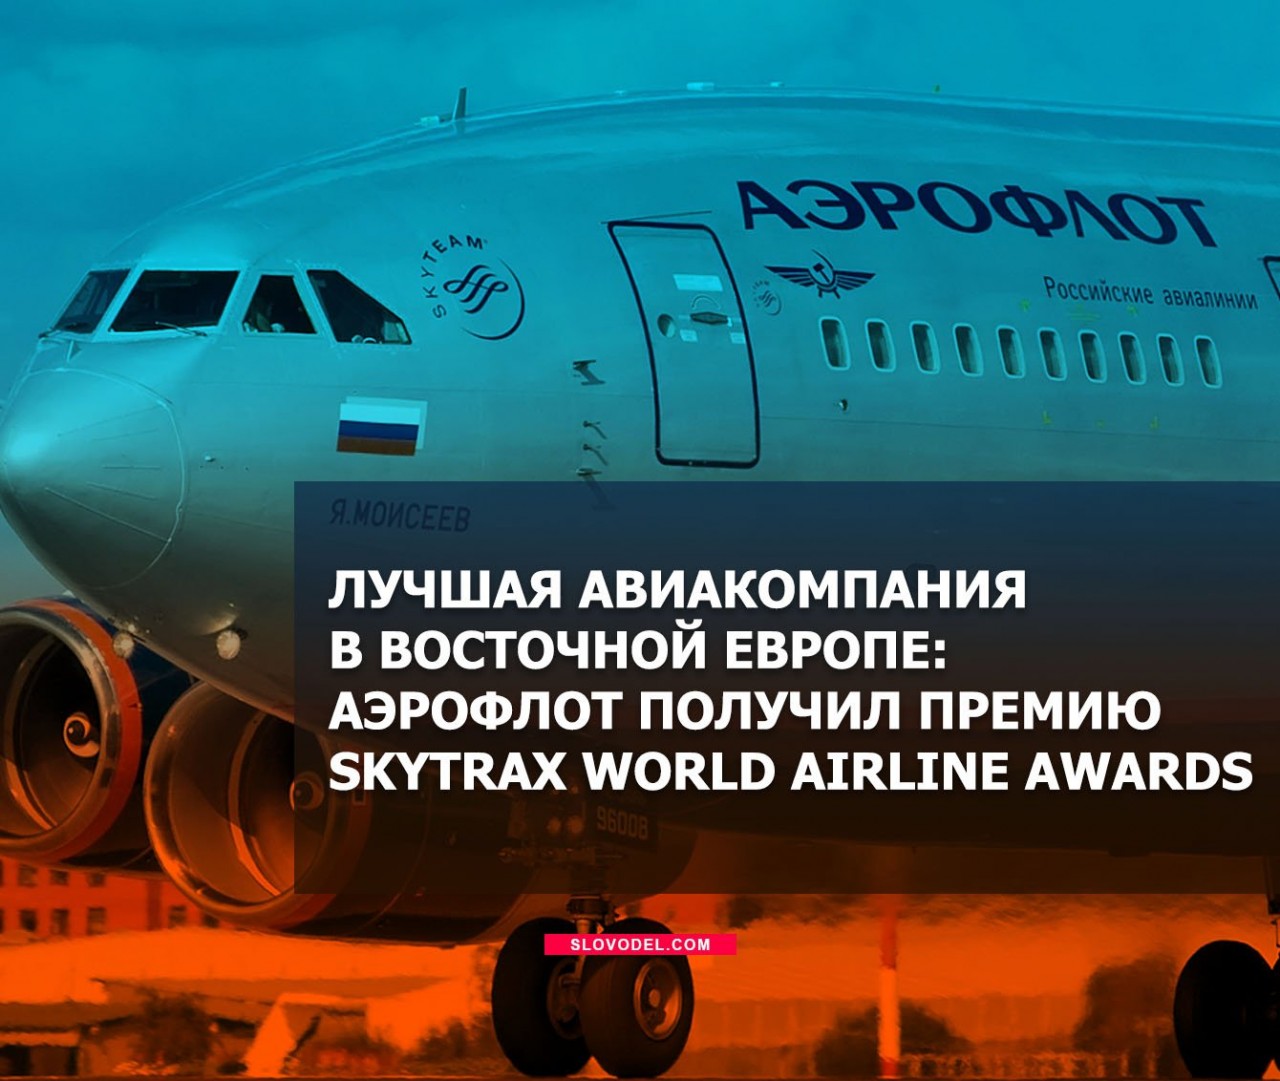 Лучшая авиакомпания в Восточной Европе: Аэрофлот получил премию Skytrax World Airline Awards